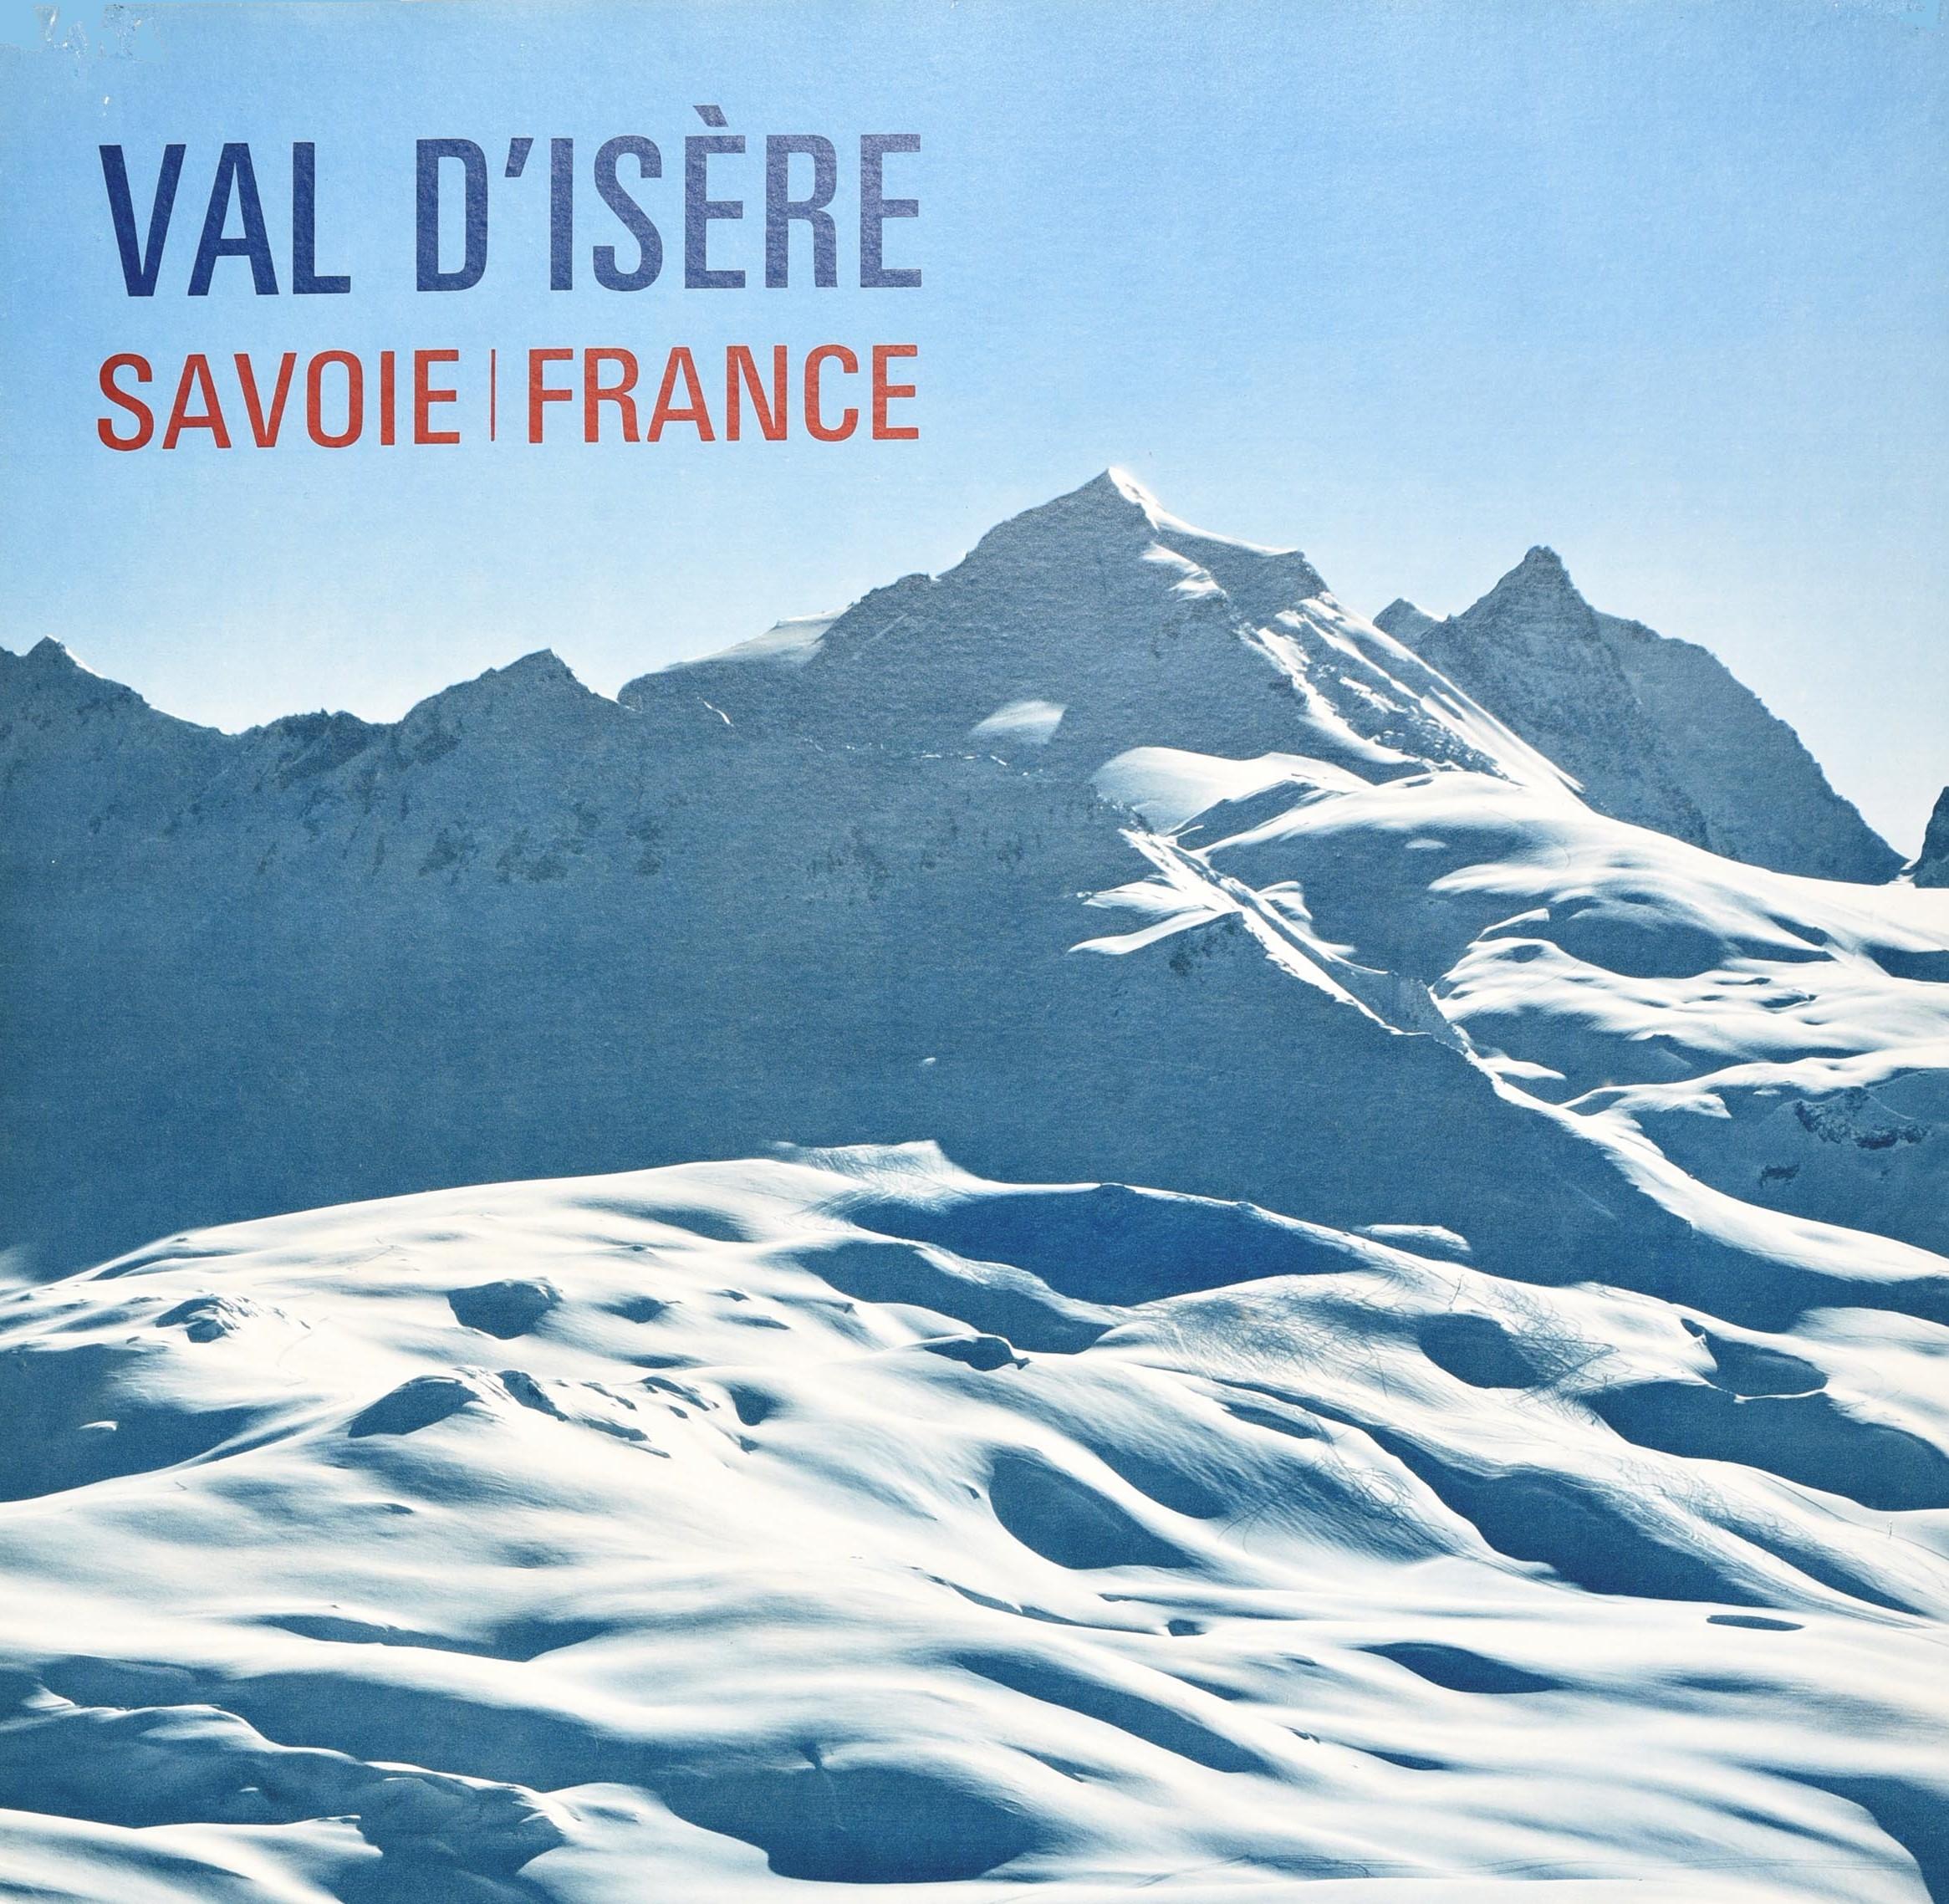 Affiche originale de voyage de ski vintage pour Val d'Isère, Savoie, France, présentant une vue panoramique de skieurs dévalant une piste avec des pics montagneux enneigés sous le ciel bleu et le texte du titre bleu et rouge. Bon état, déchirures